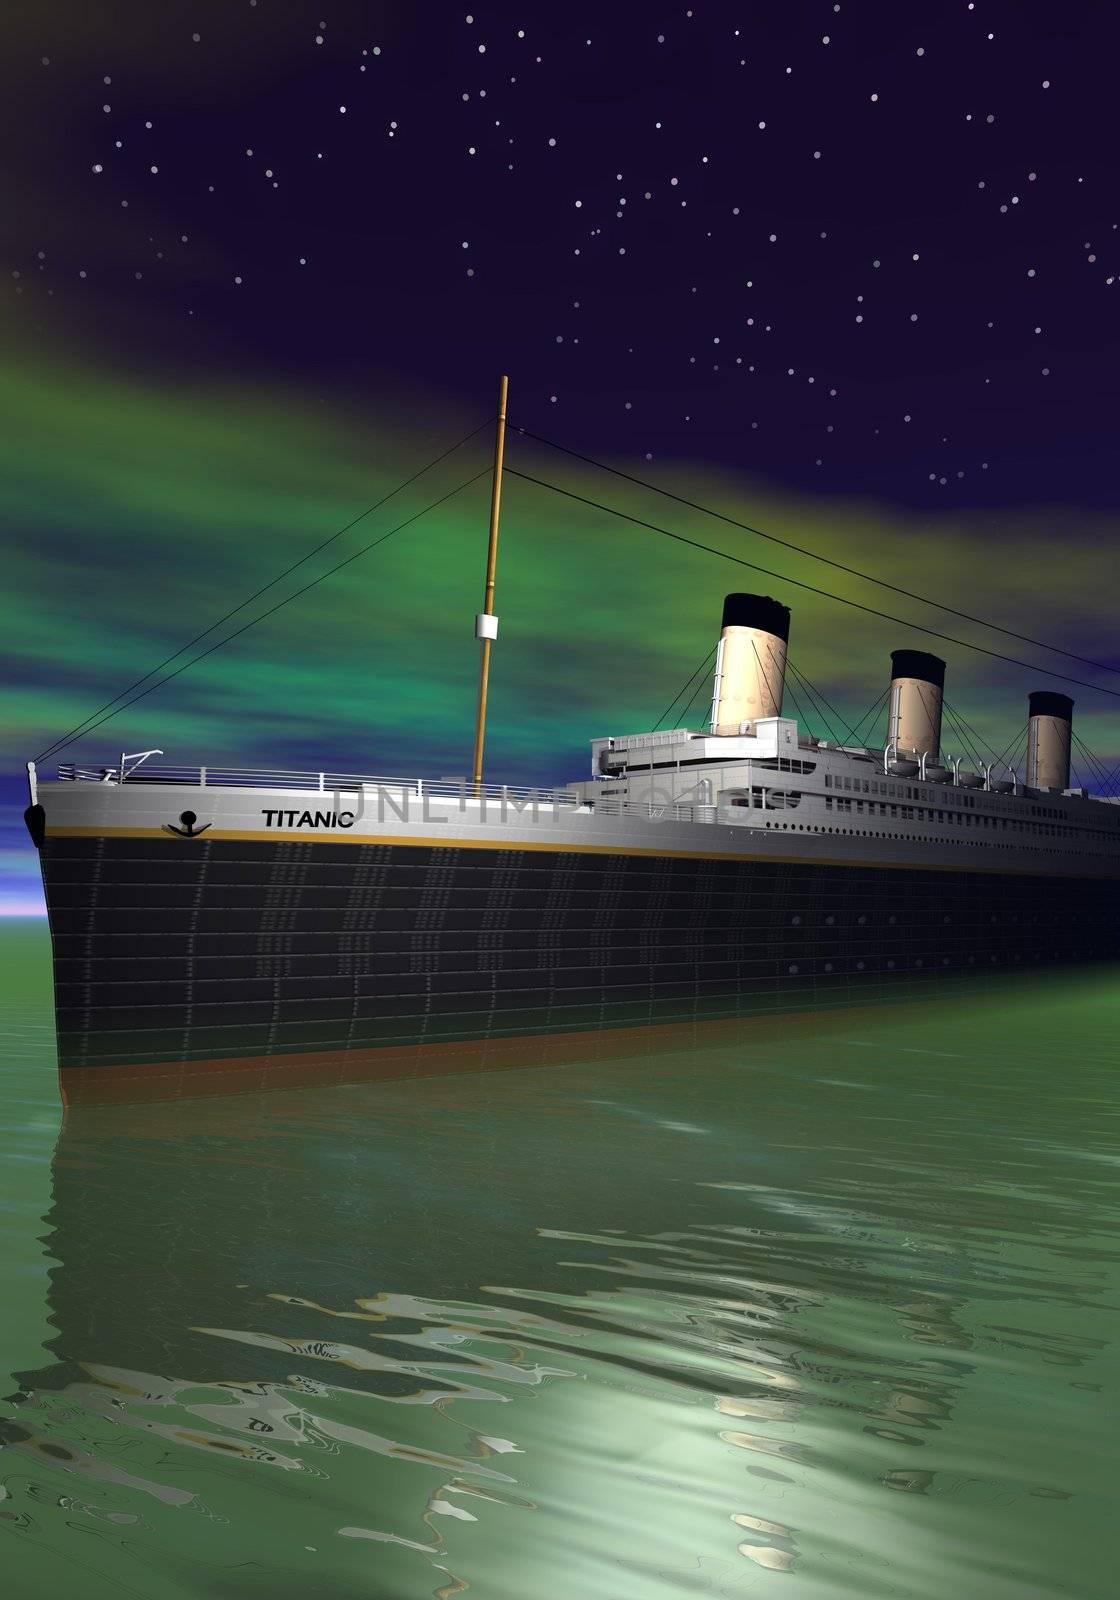 Titanic 1912-2012 and sea